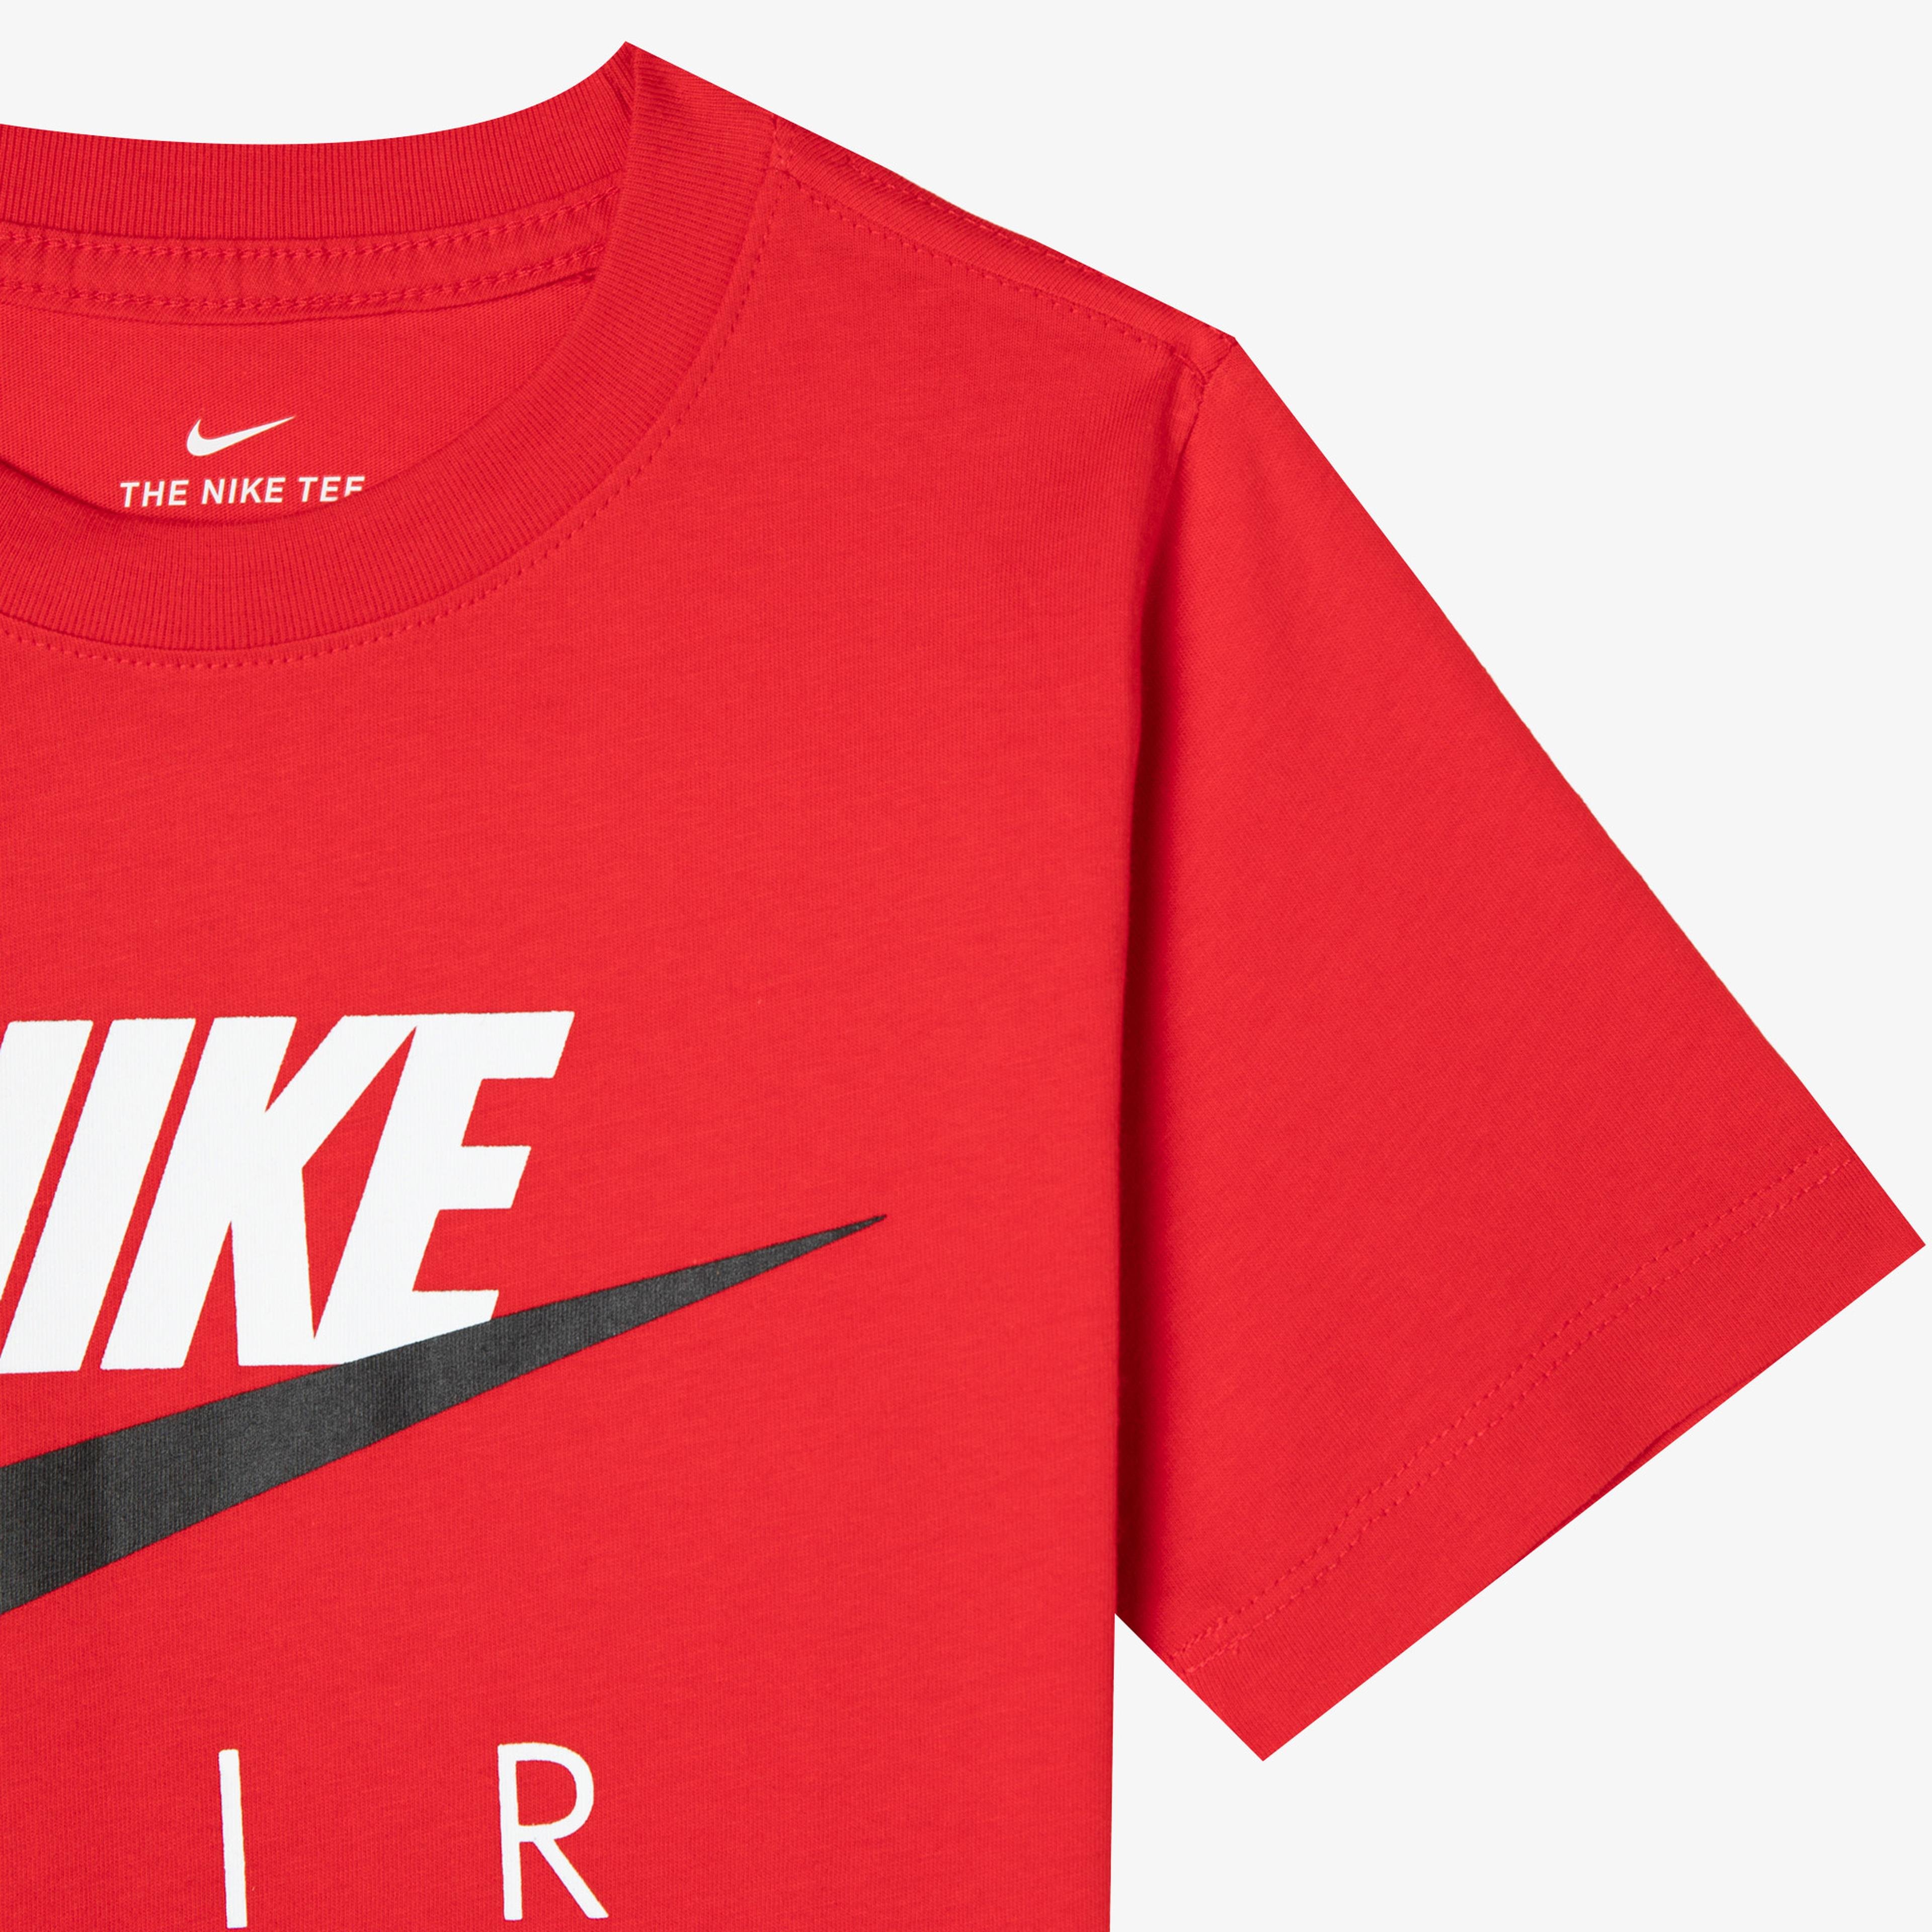 Nike Air Çocuk Kırmızı T-Shirt